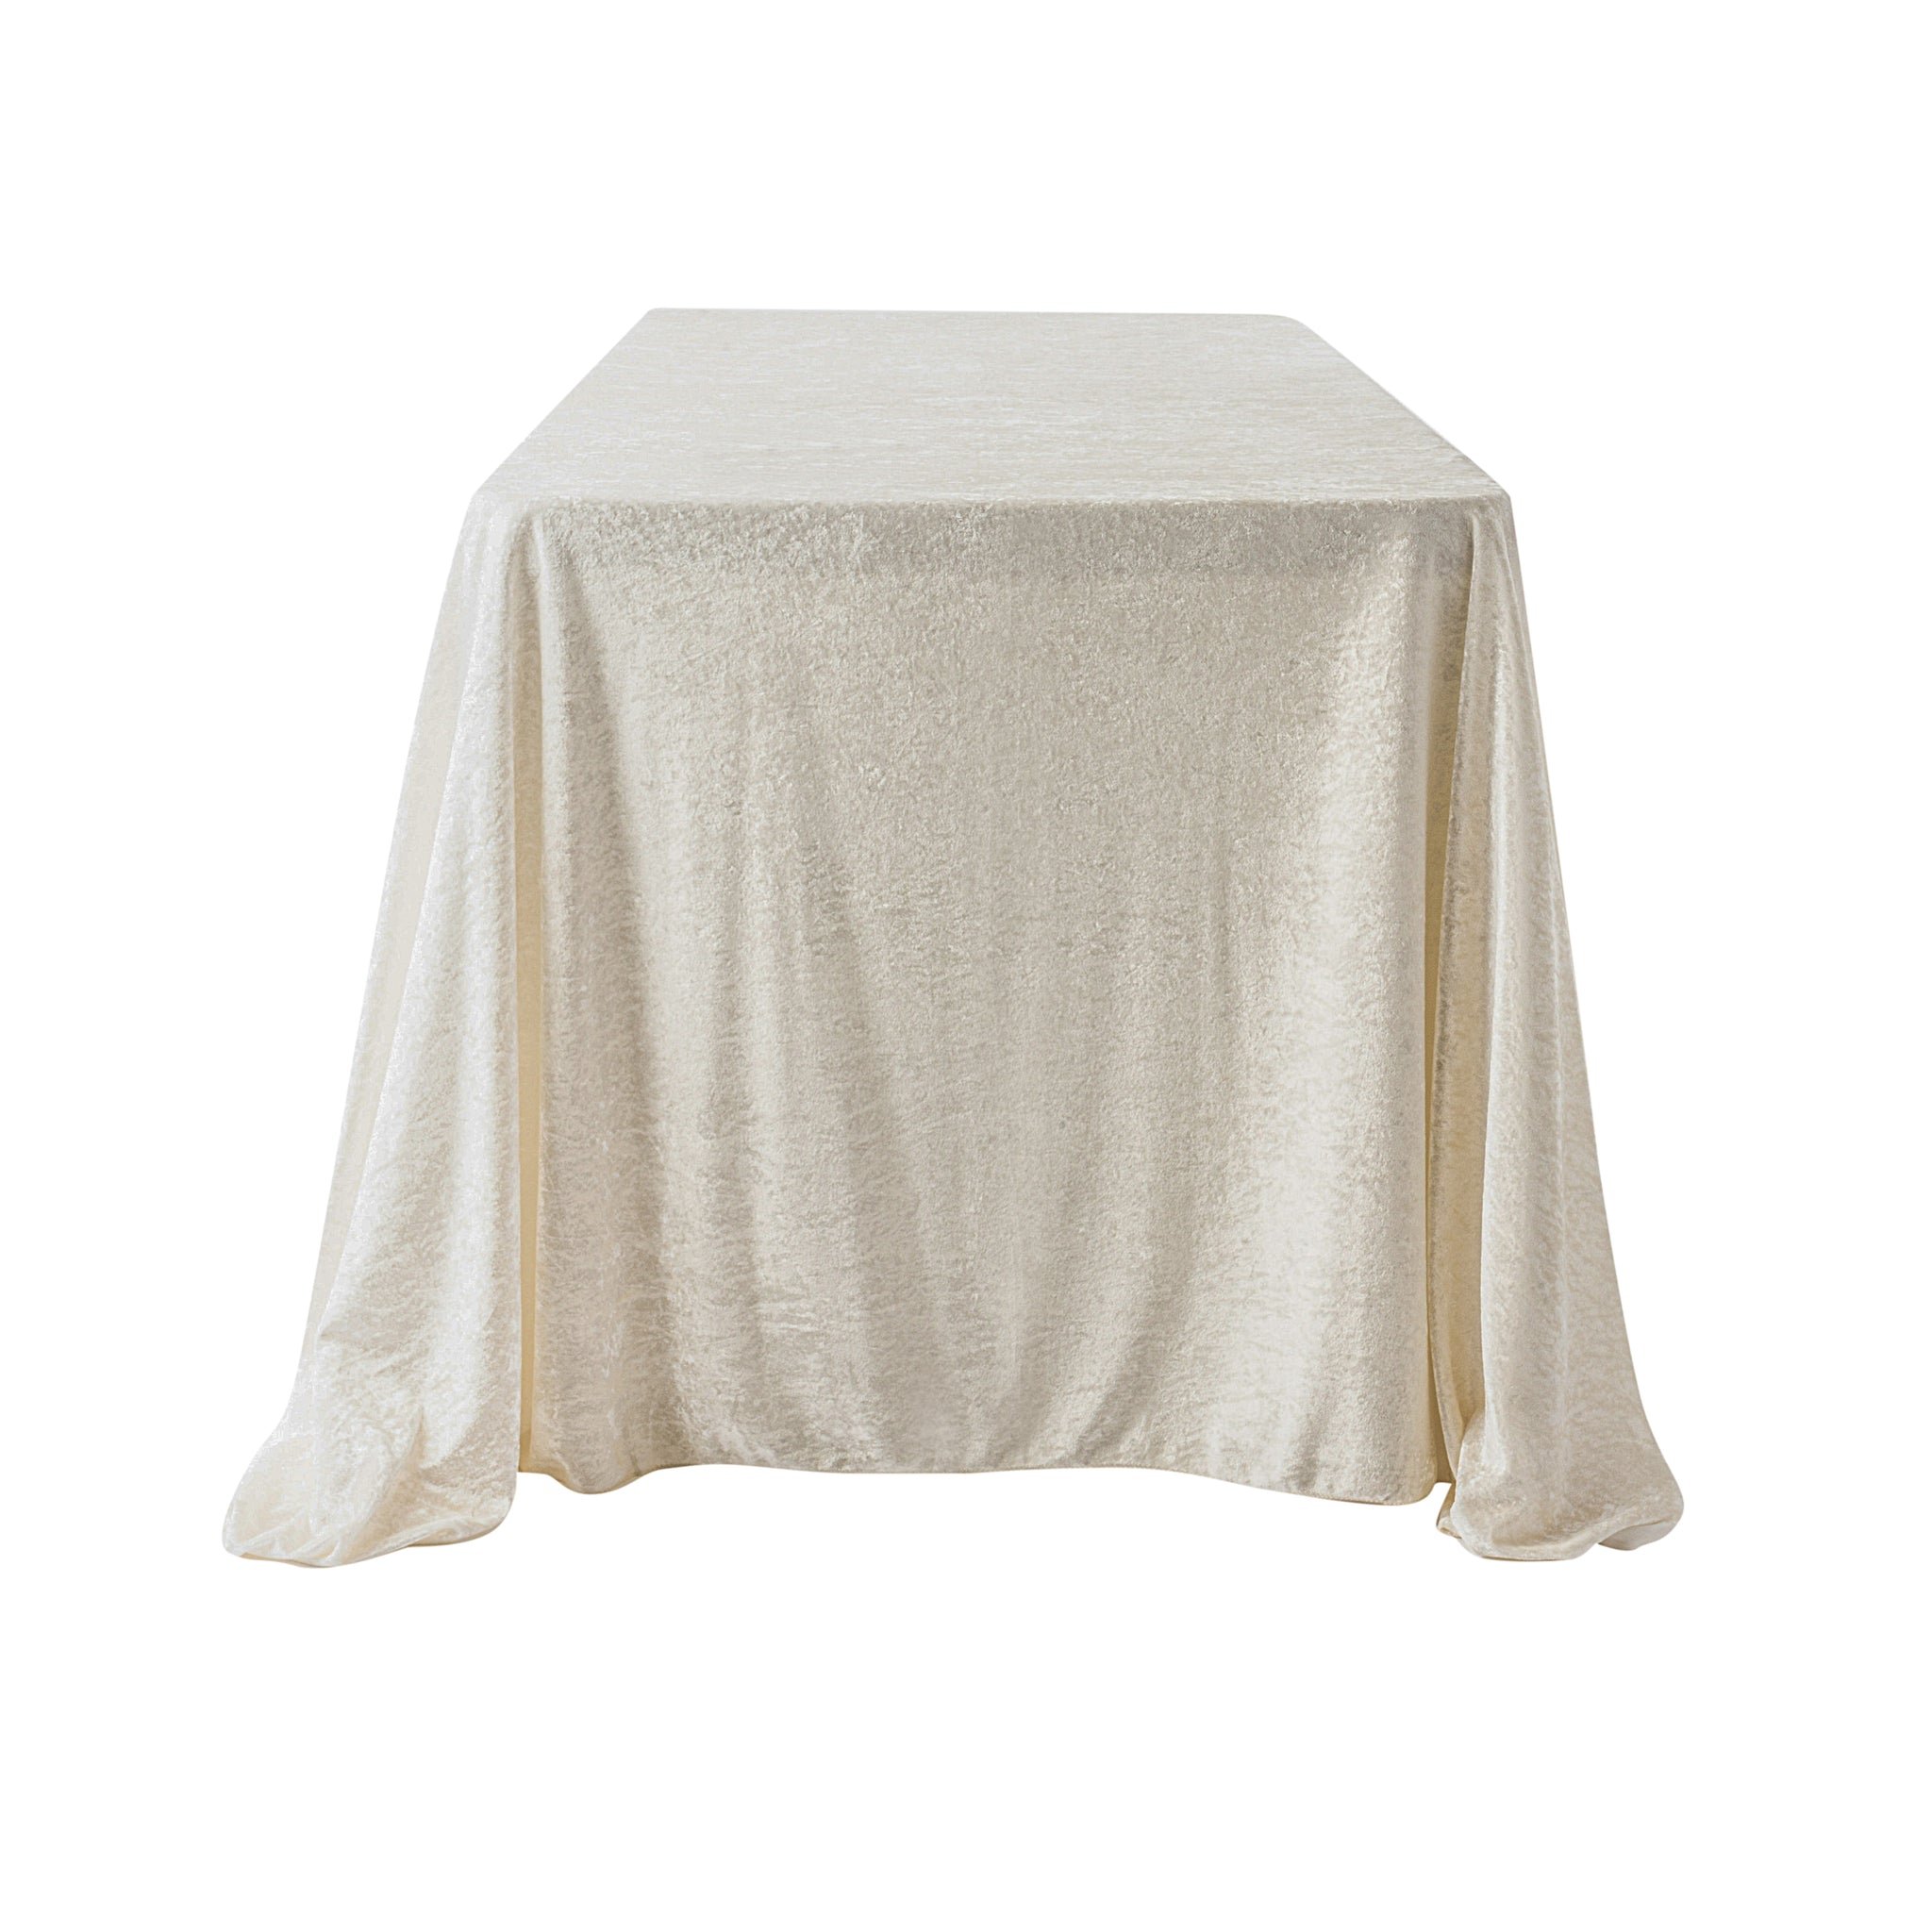 velvet_rectangular_tablecloth_ivory_2048x2048.jpg